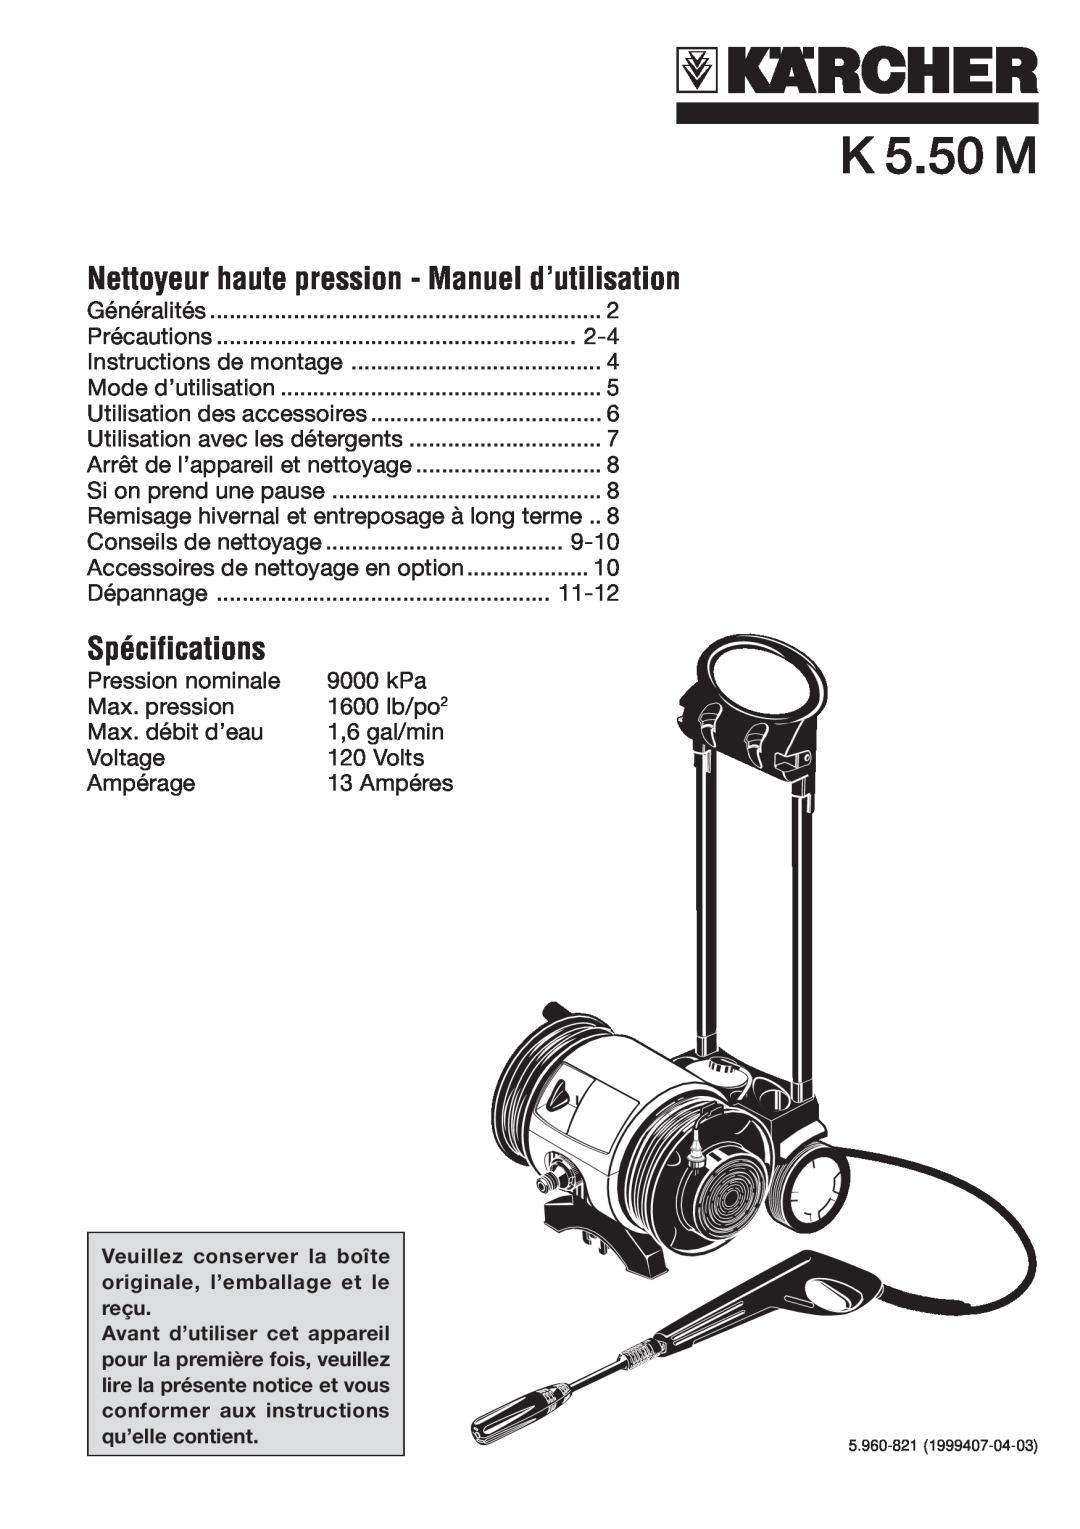 Karcher K 5.50 M specifications Nettoyeur haute pression - Manuel d’utilisation, Spécifications 